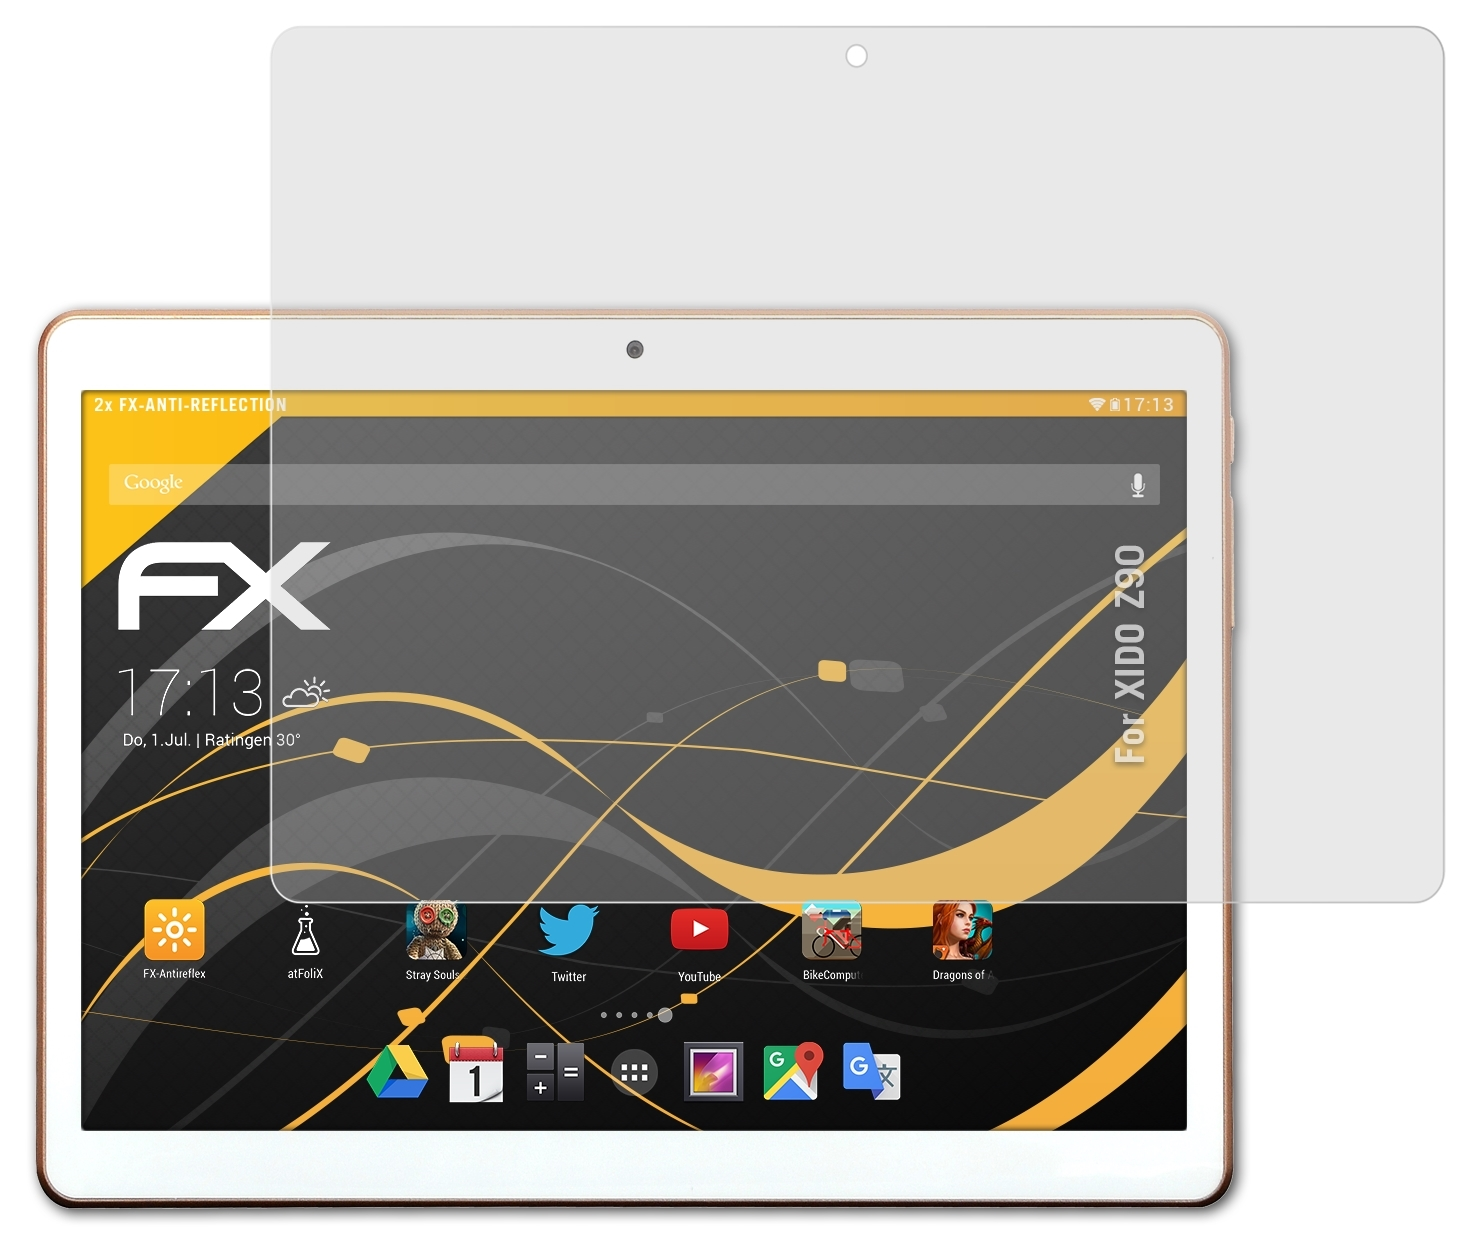 ATFOLIX 2x XIDO Displayschutz(für Z90) FX-Antireflex